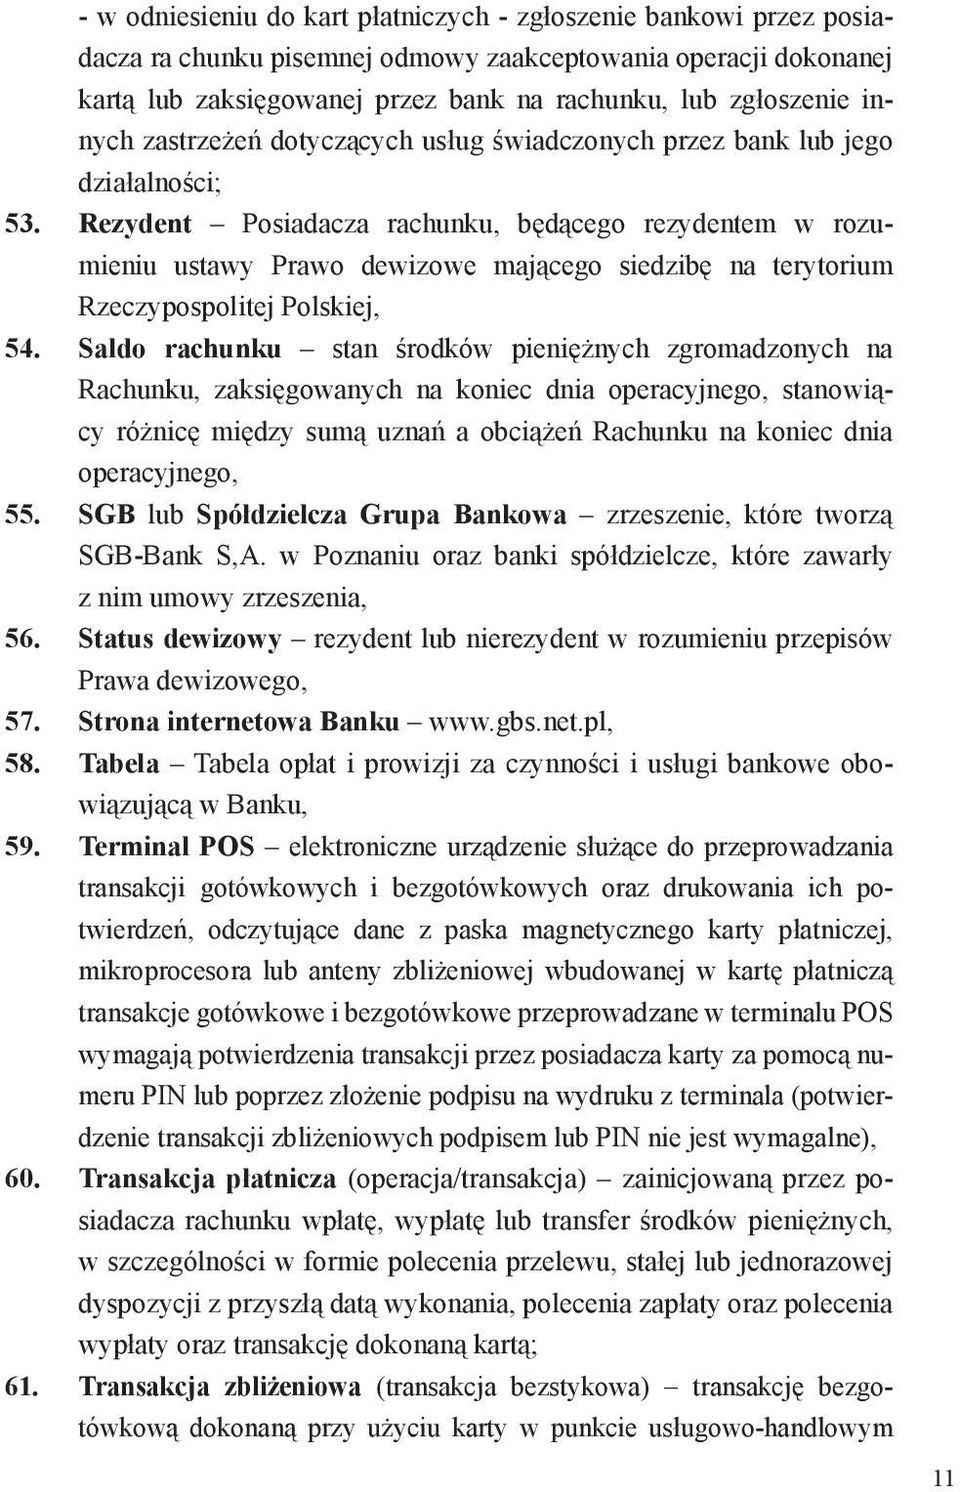 Rezydent Posiadacza rachunku, będącego rezydentem w rozumieniu ustawy Prawo dewizowe mającego siedzibę na terytorium Rzeczypospolitej Polskiej, 54.